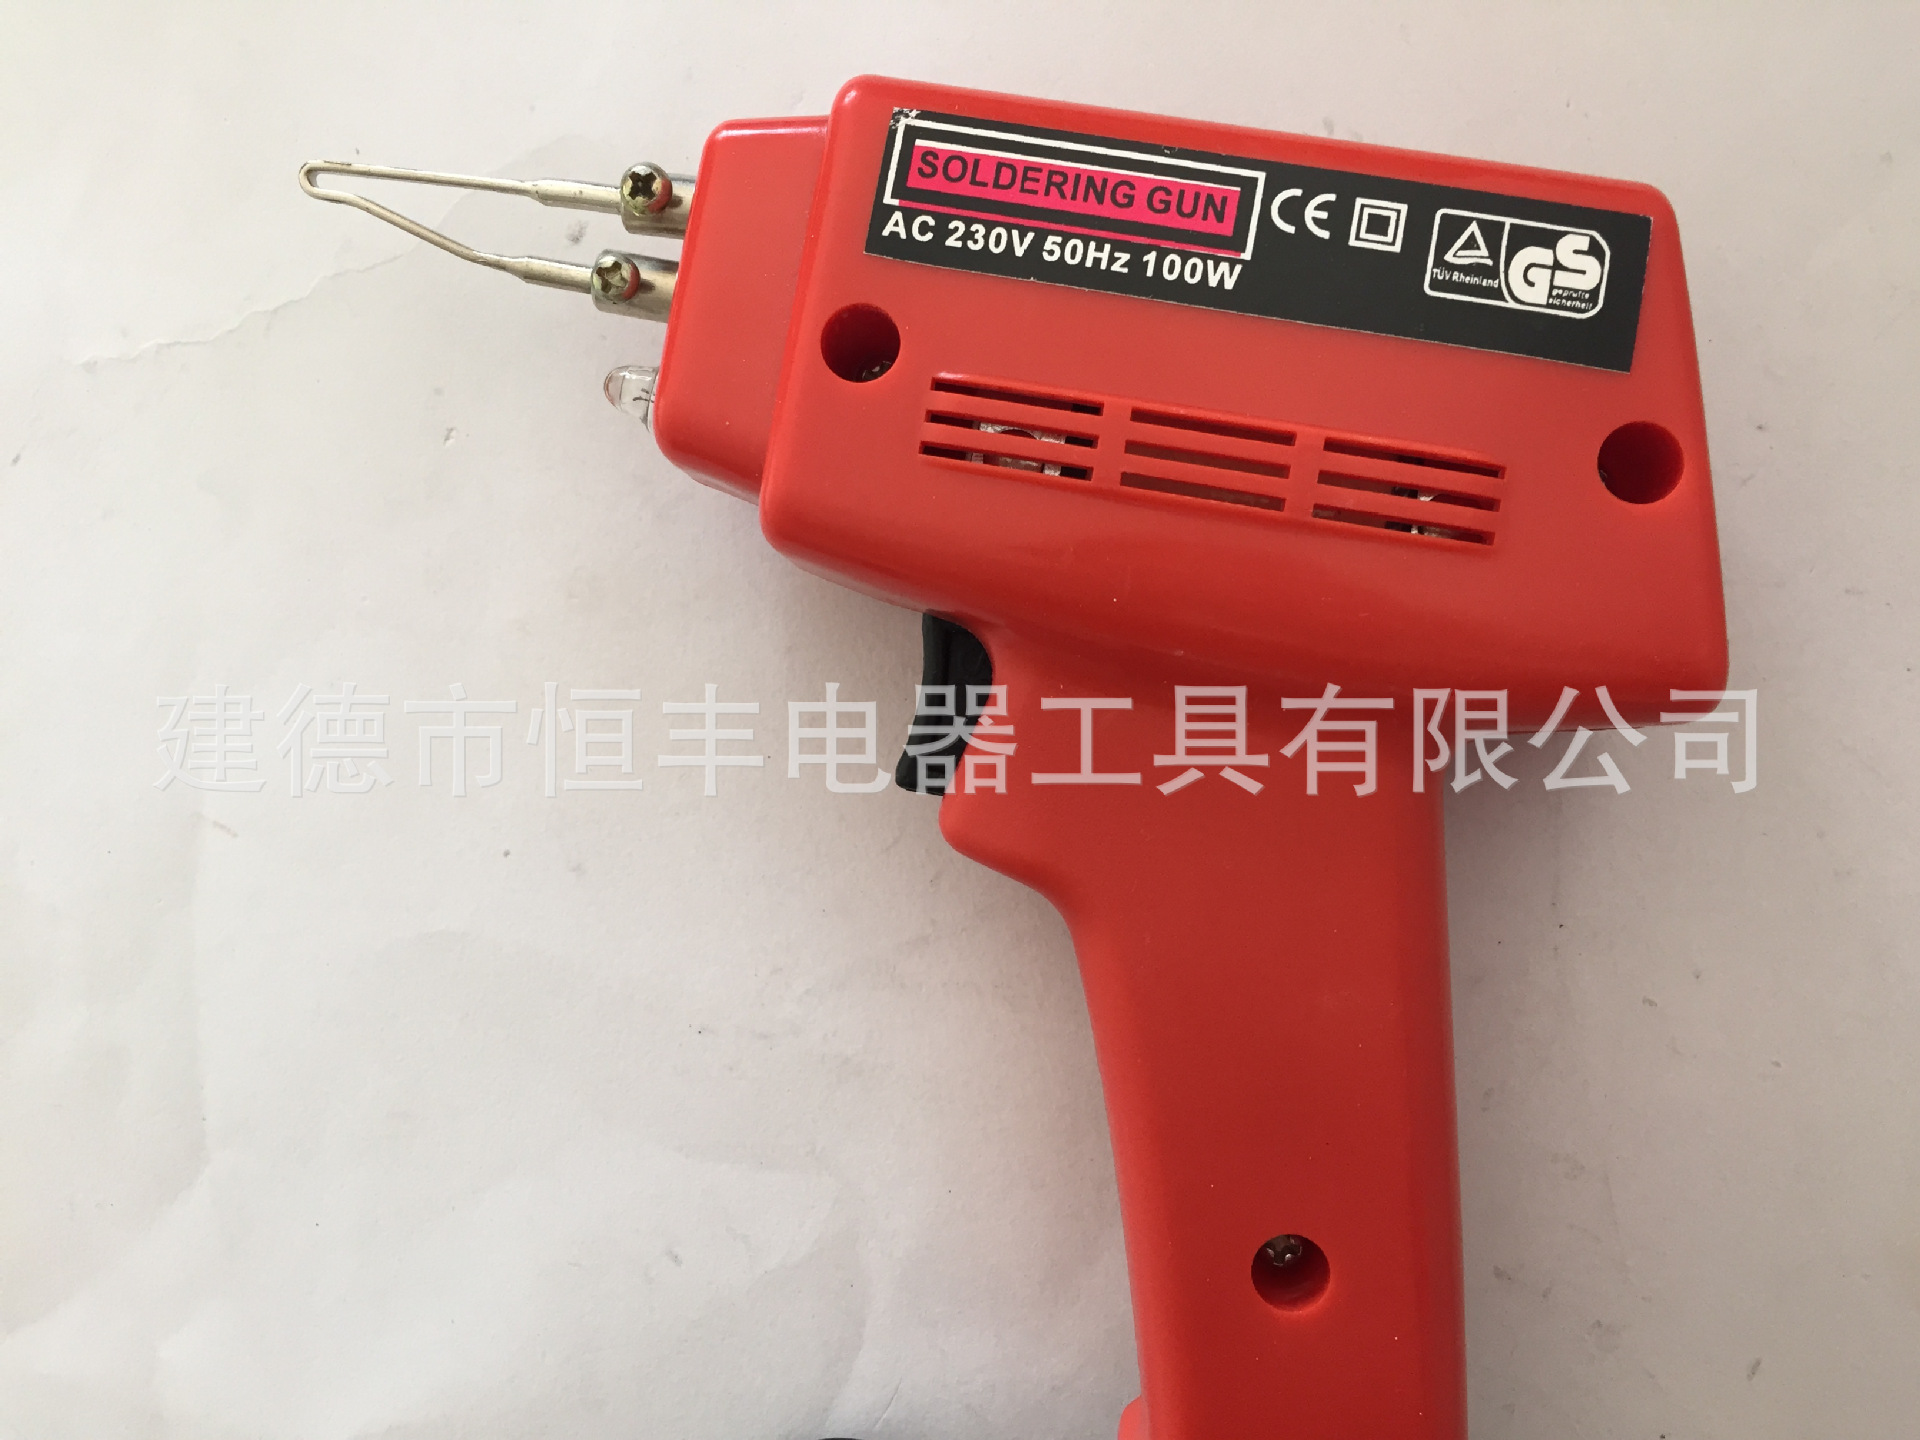 【厂家直销】hf-j053 供应电焊枪 焊枪 电烙铁 焊接修理